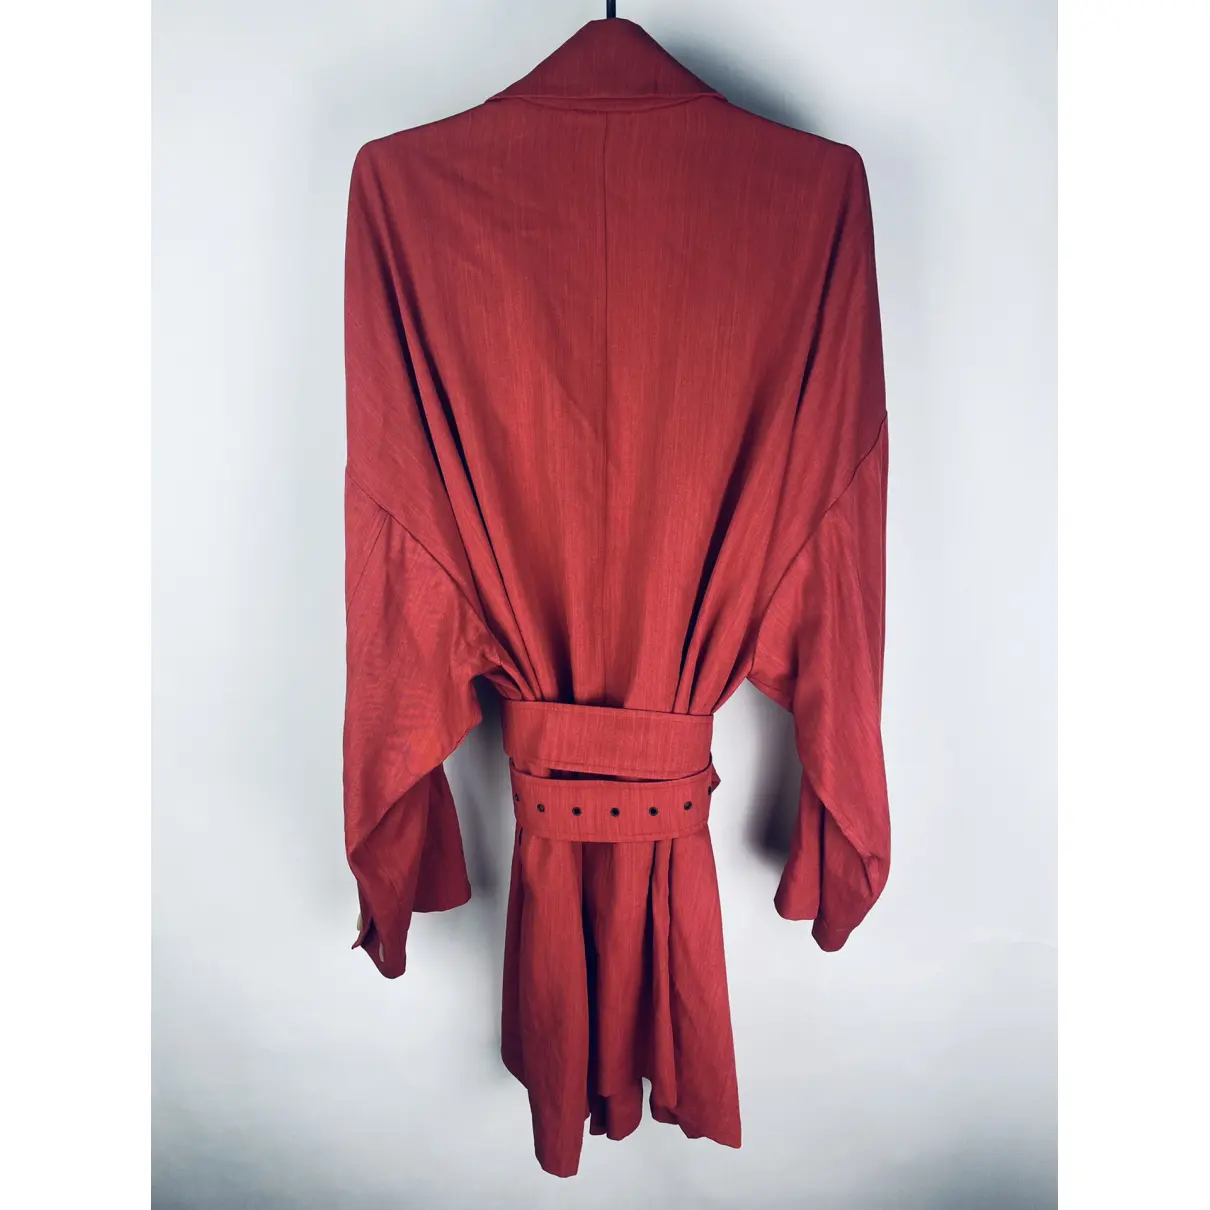 Buy Jil Sander Wool coat online - Vintage